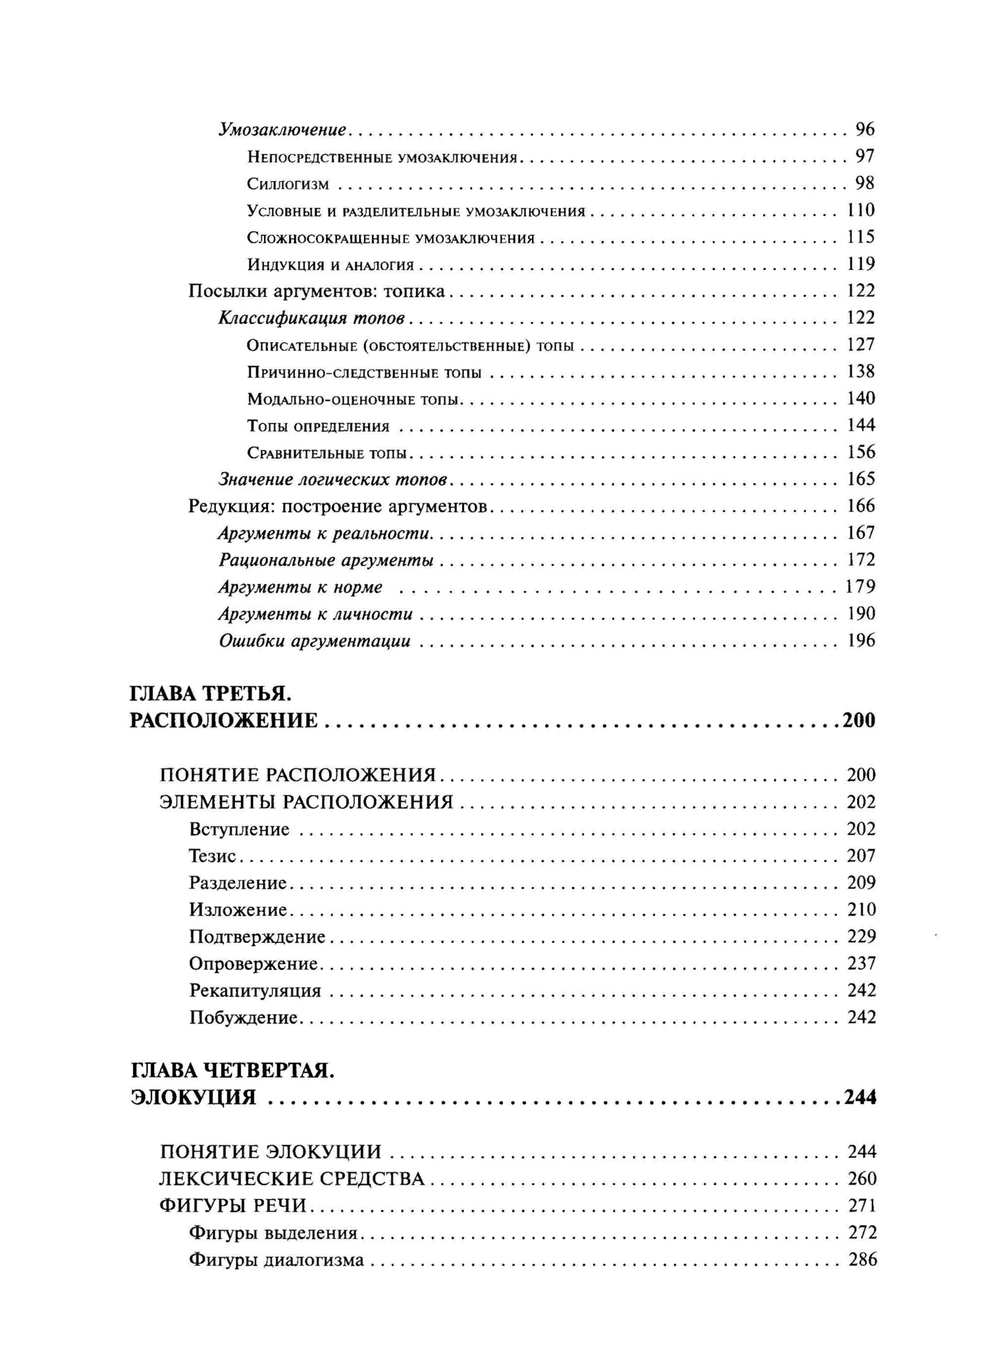 Волков А.А. Курс русской риторики. 3-е изд., исправл. и дополн.